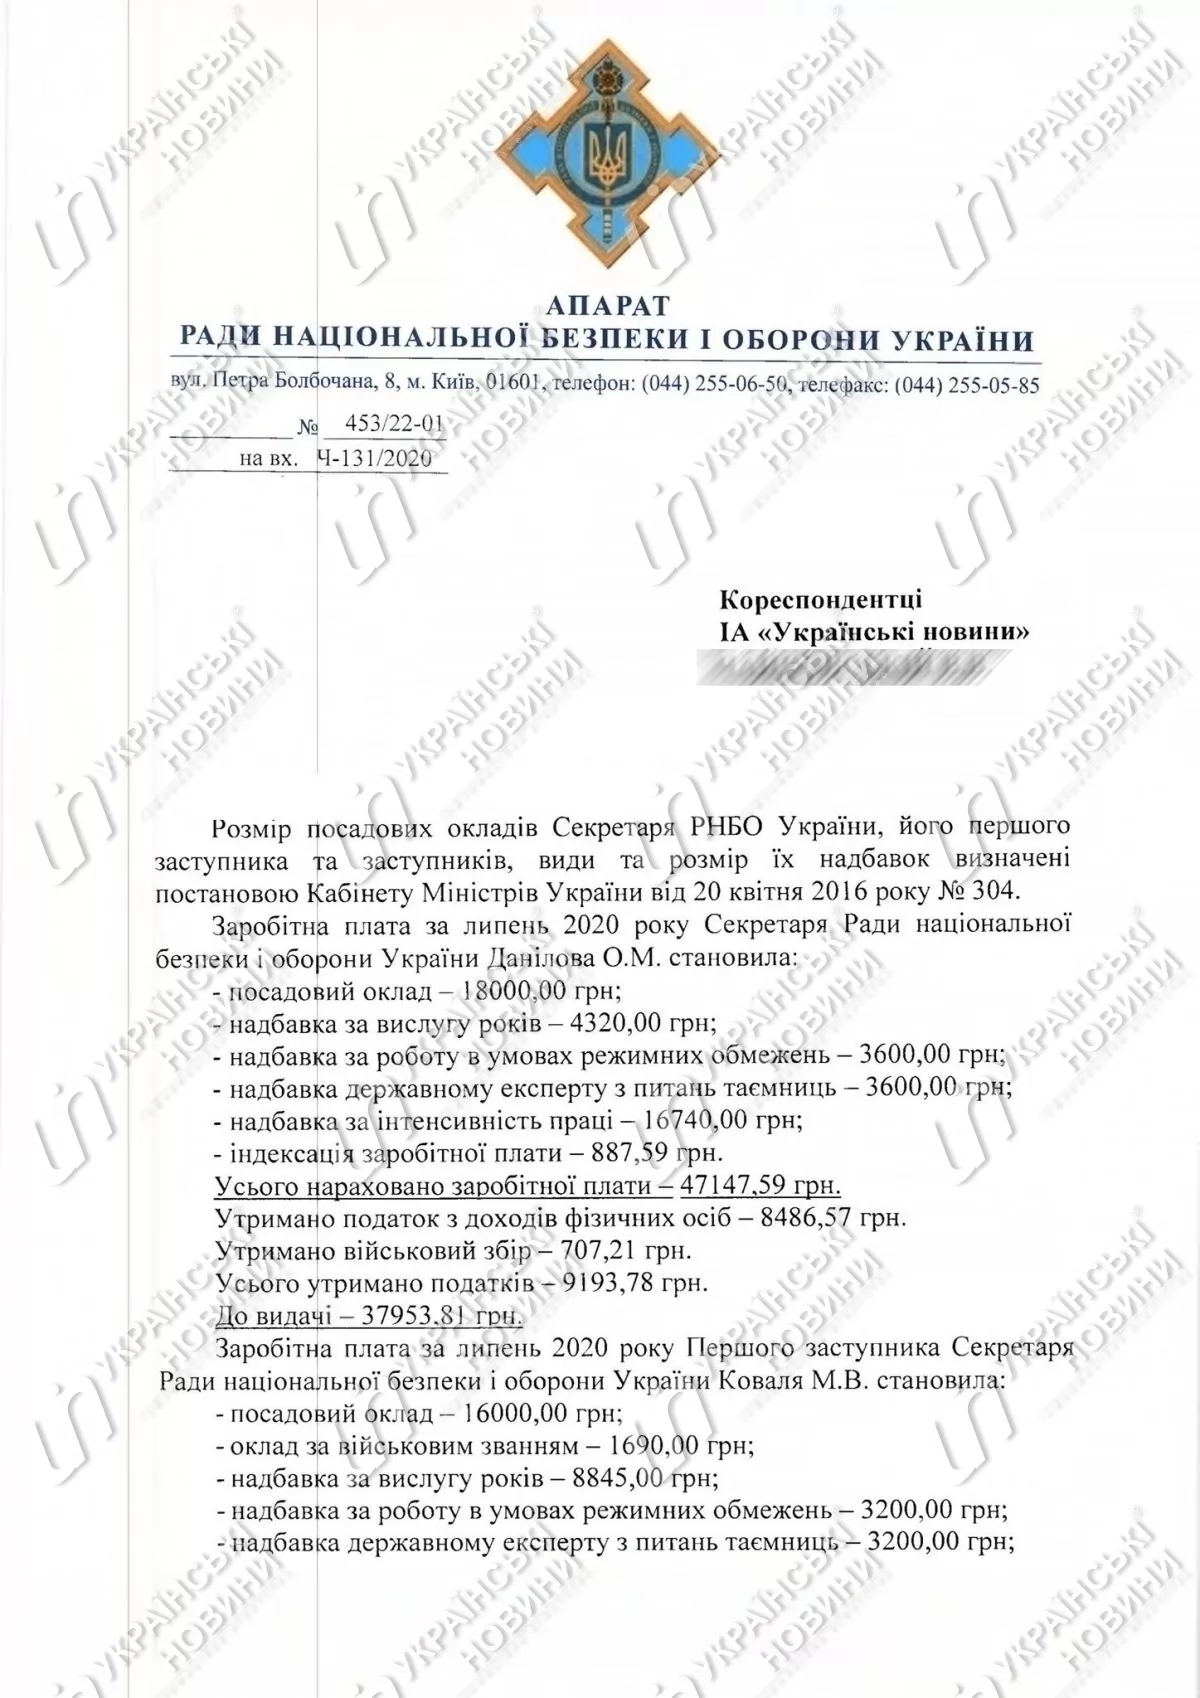 Секретарь СНБО Данилов за июль заработал почти в два раза меньше, чем замсекретаря - документ. Скан: Украинские новости